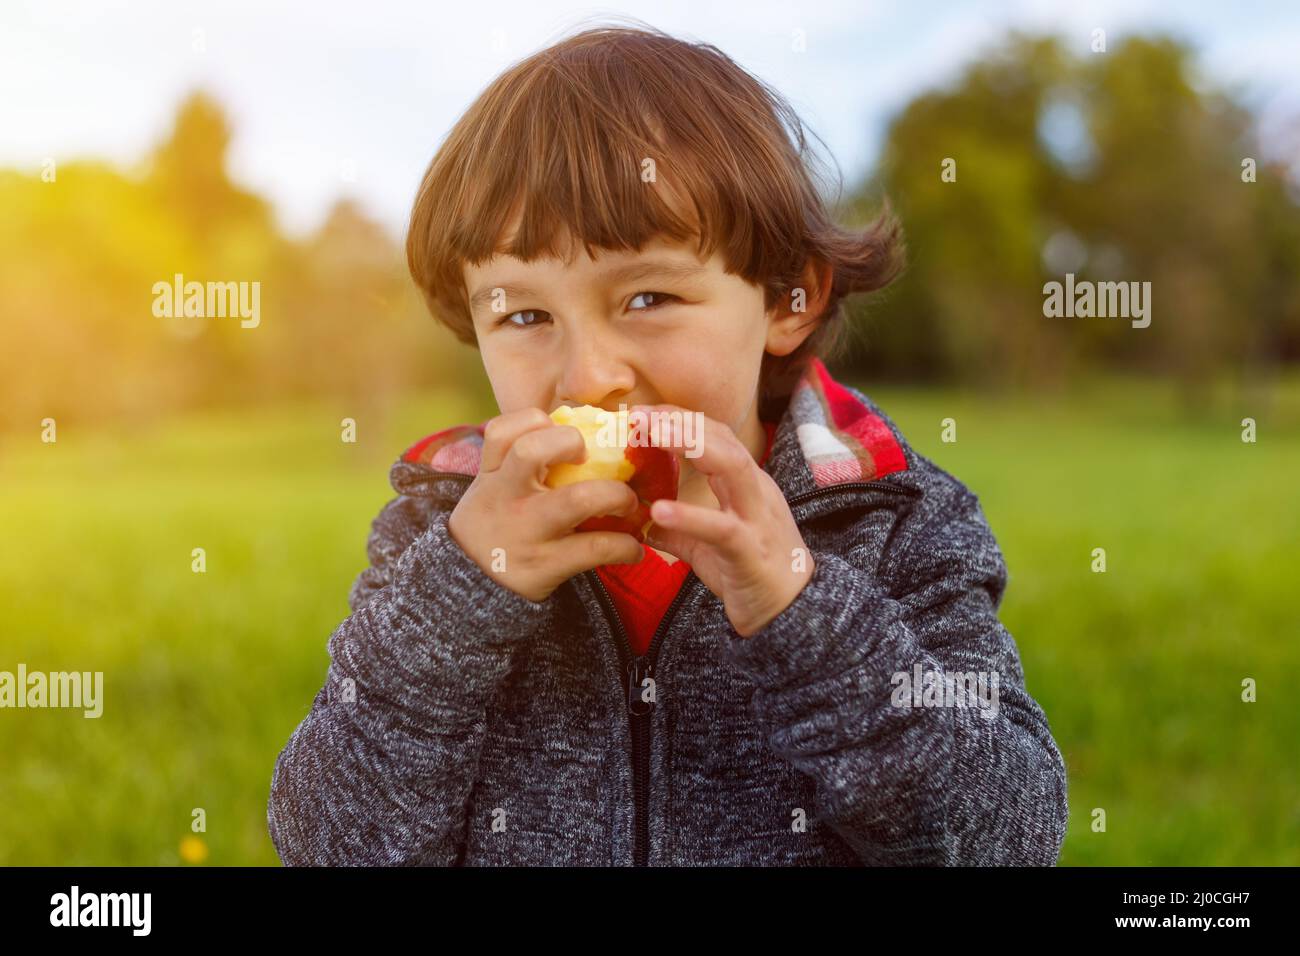 Kinder Apfelfrüchte essen außerhalb des Herbstes gesunde Ernährung Stockfoto